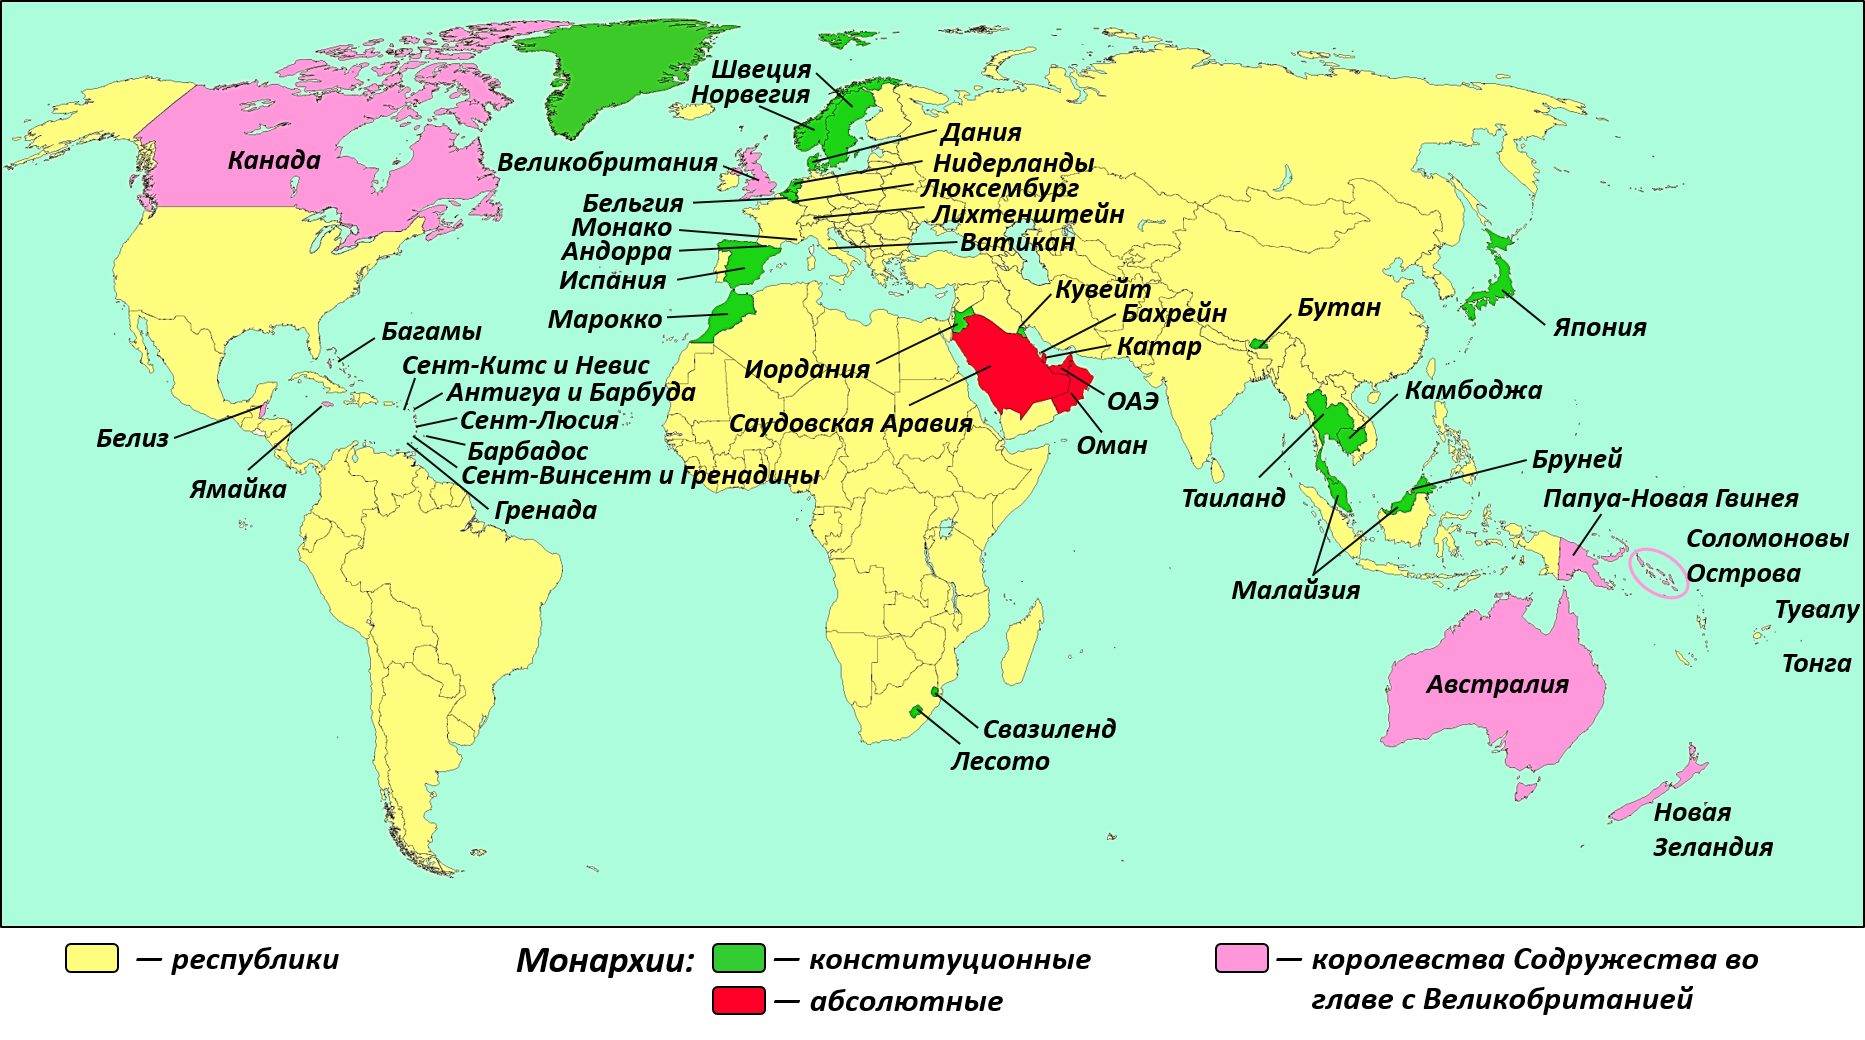 Абсолютная монархия в каких странах европы. Страны с конституционной монархией на карте. Государства с республиканской формой правления Европы на карте.